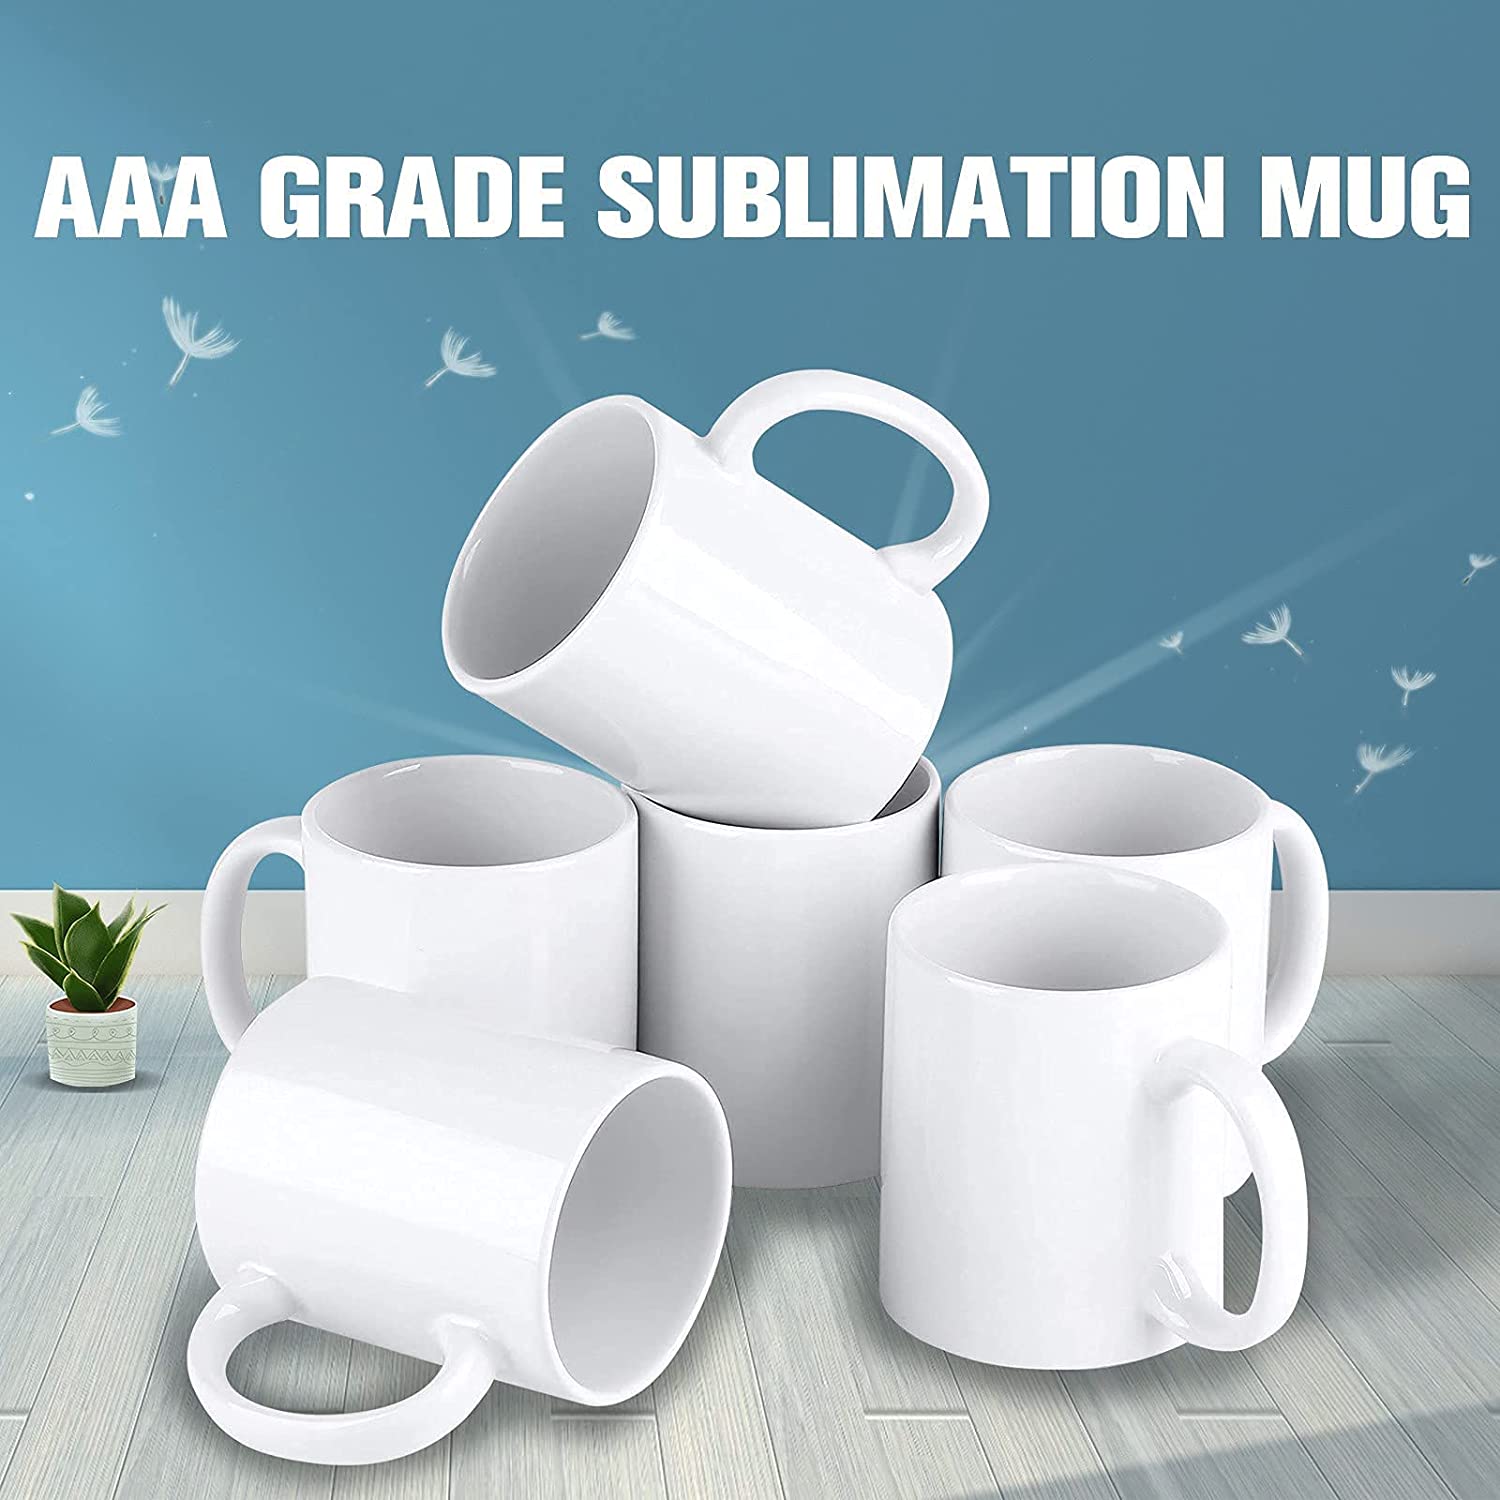 11oz White Sublimation Coated Mugs x 6